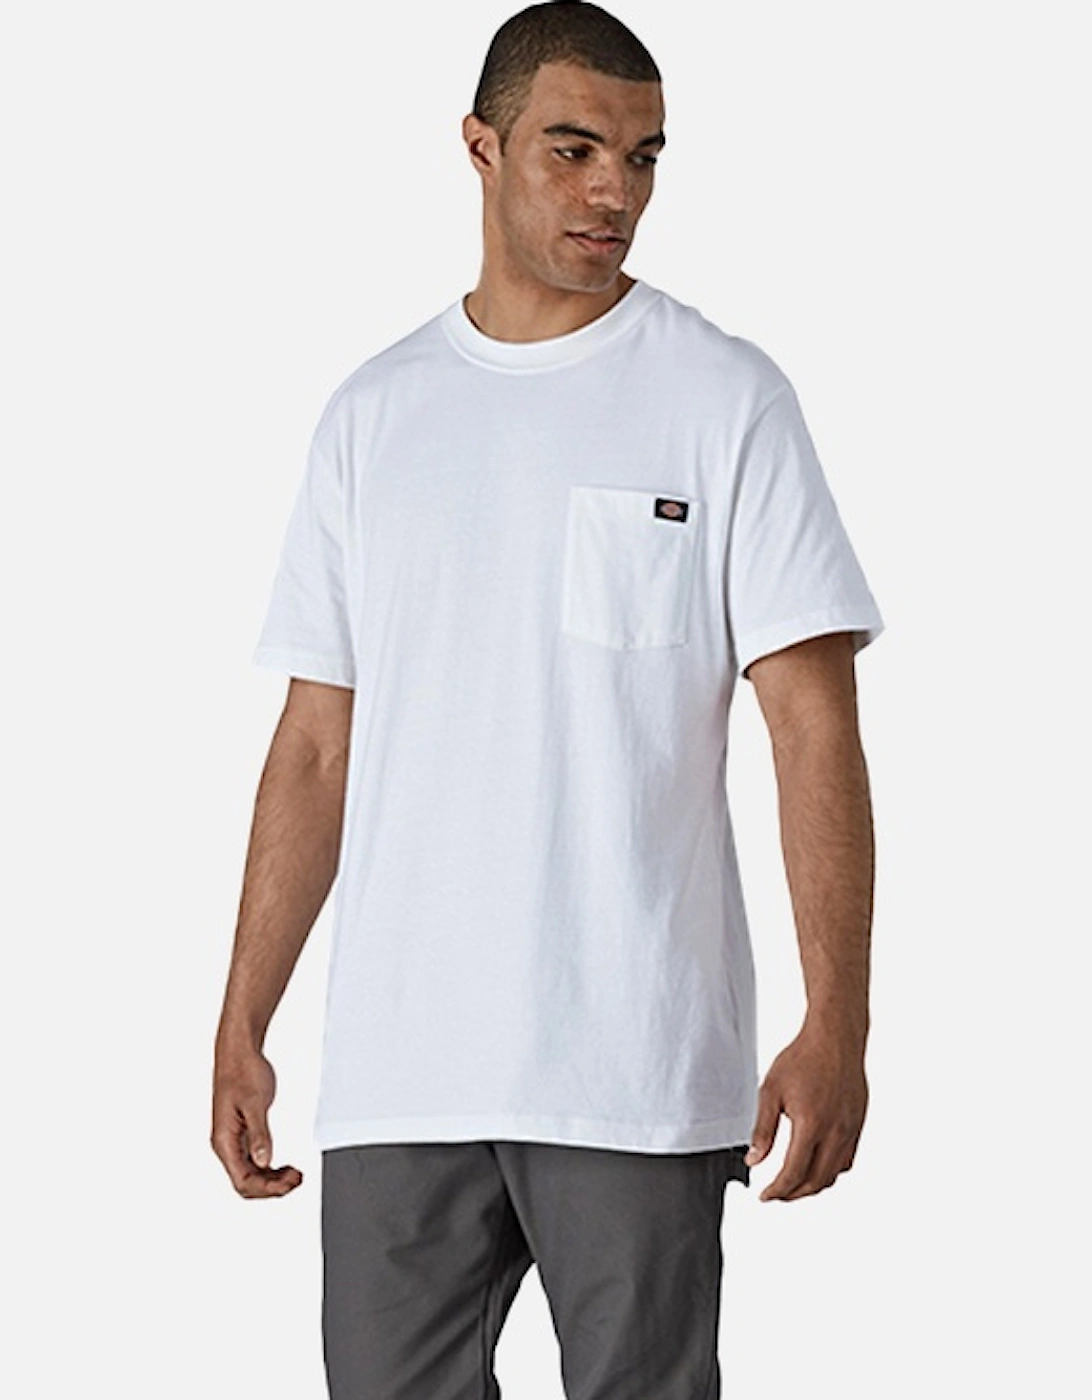 Men's Short Sleeve Cotton T-shirt White, 6 of 5